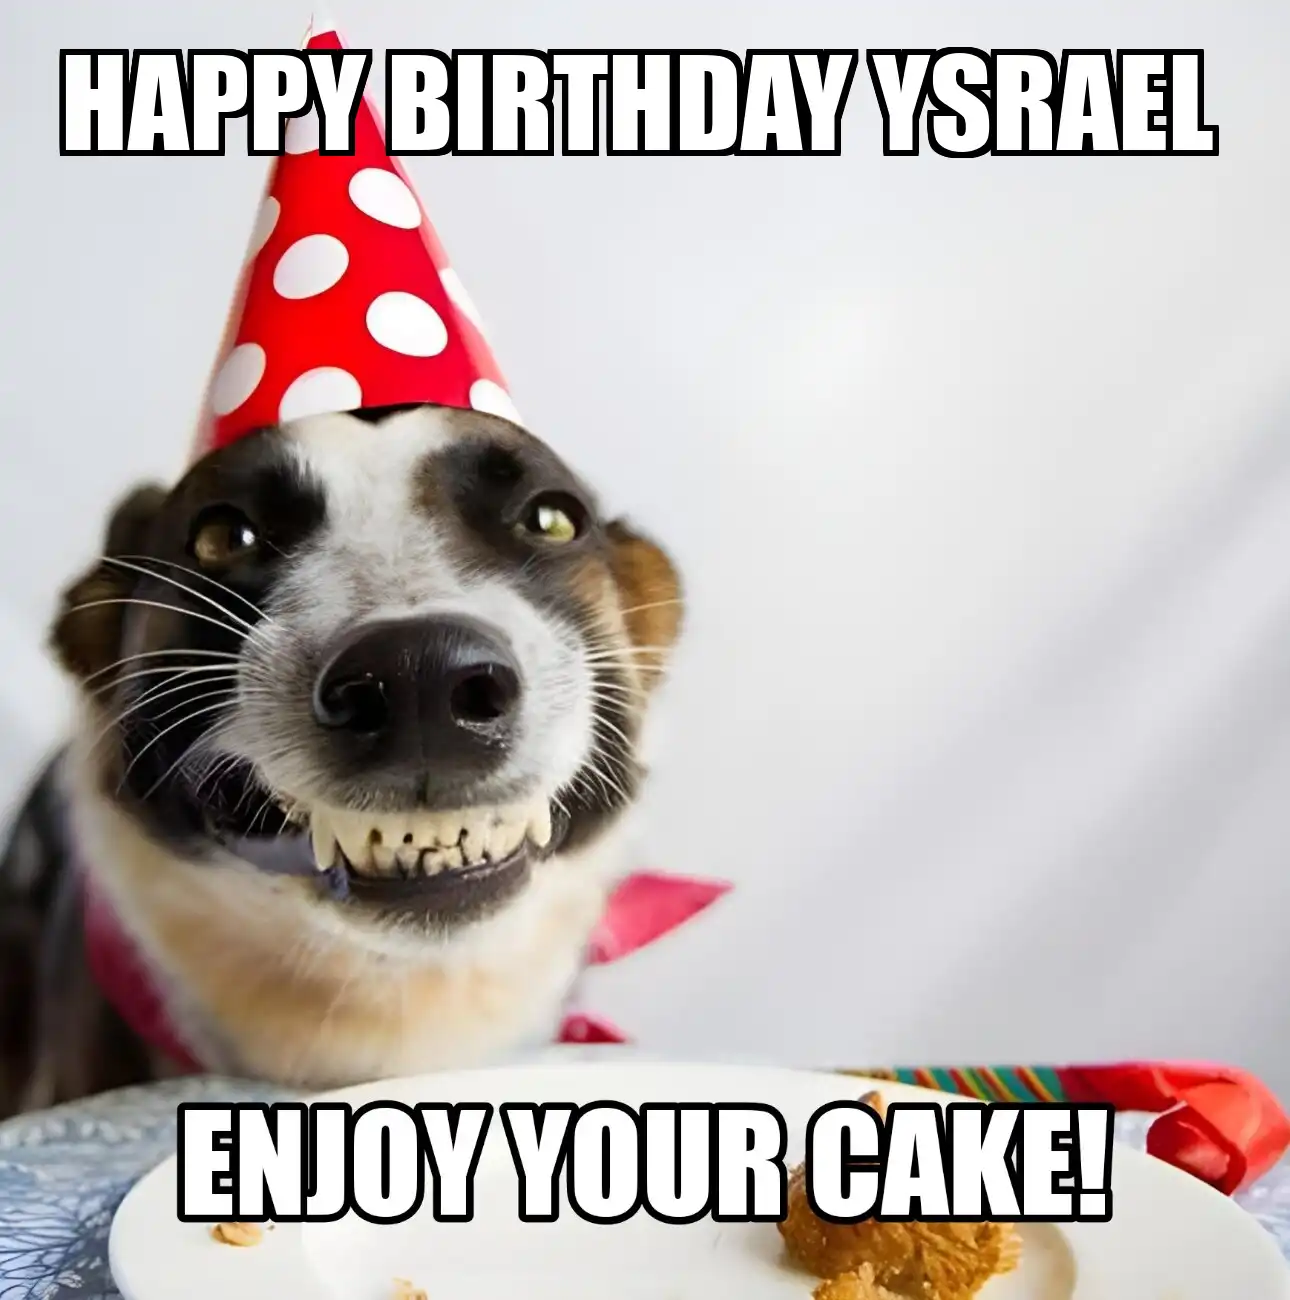 Happy Birthday Ysrael Enjoy Your Cake Dog Meme